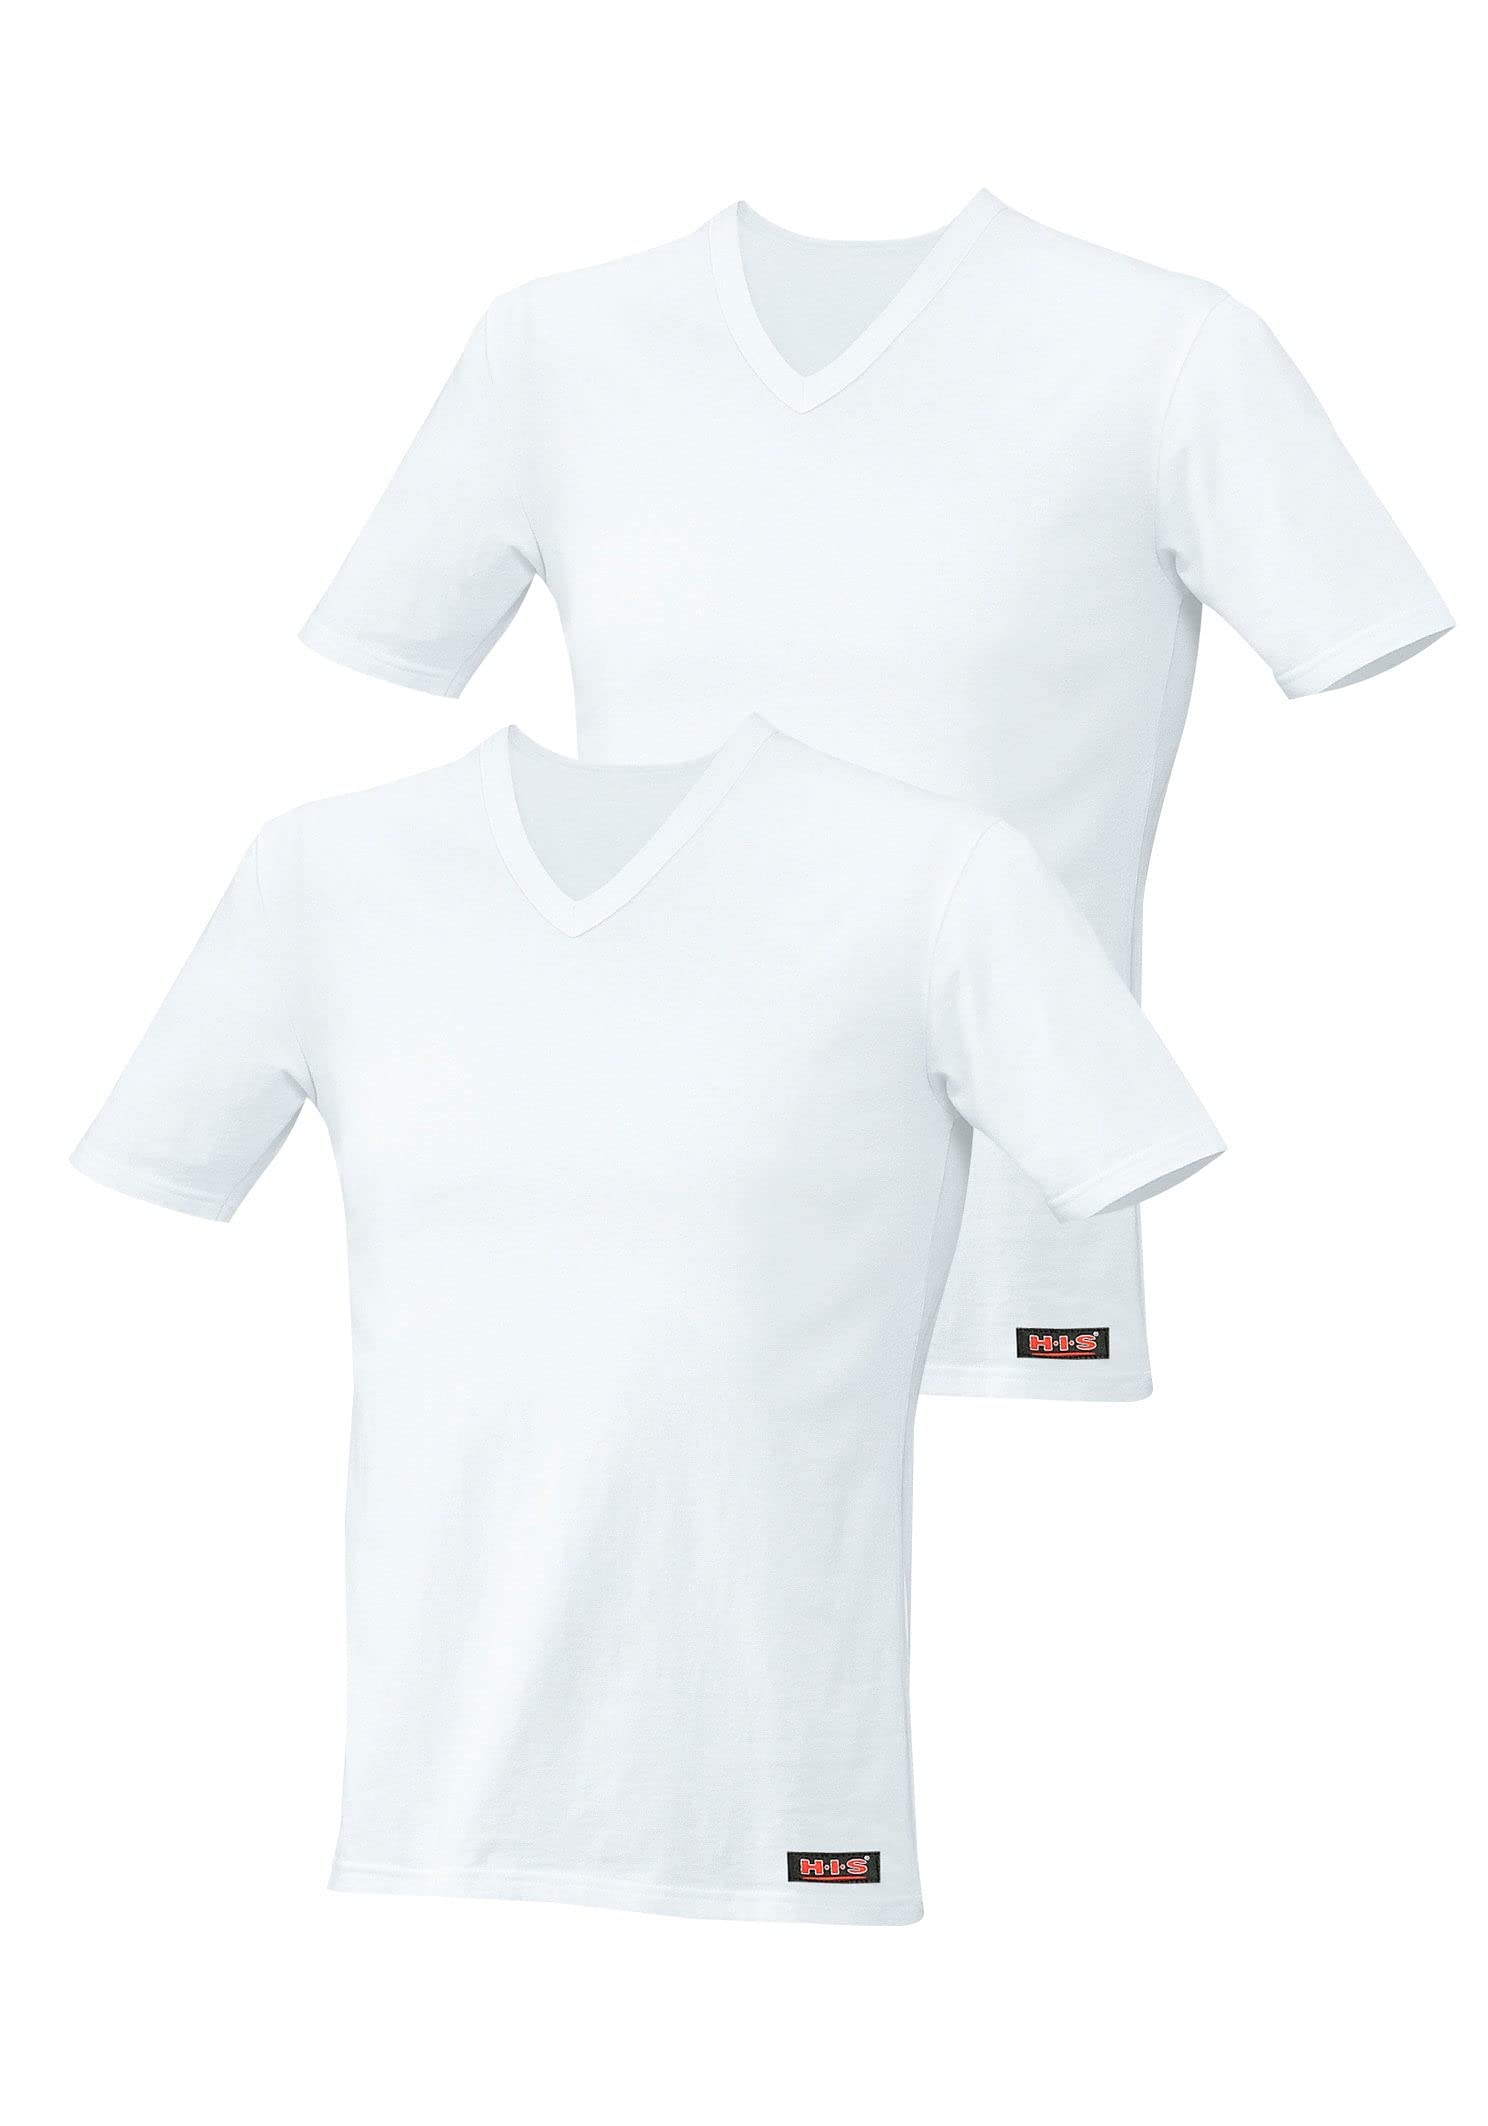 HIS Herren Basic T-Shirt mit V-Ausschnitt Slim fit Baumwolle Stretch | 2 Stück | weiß, Gr. XXL